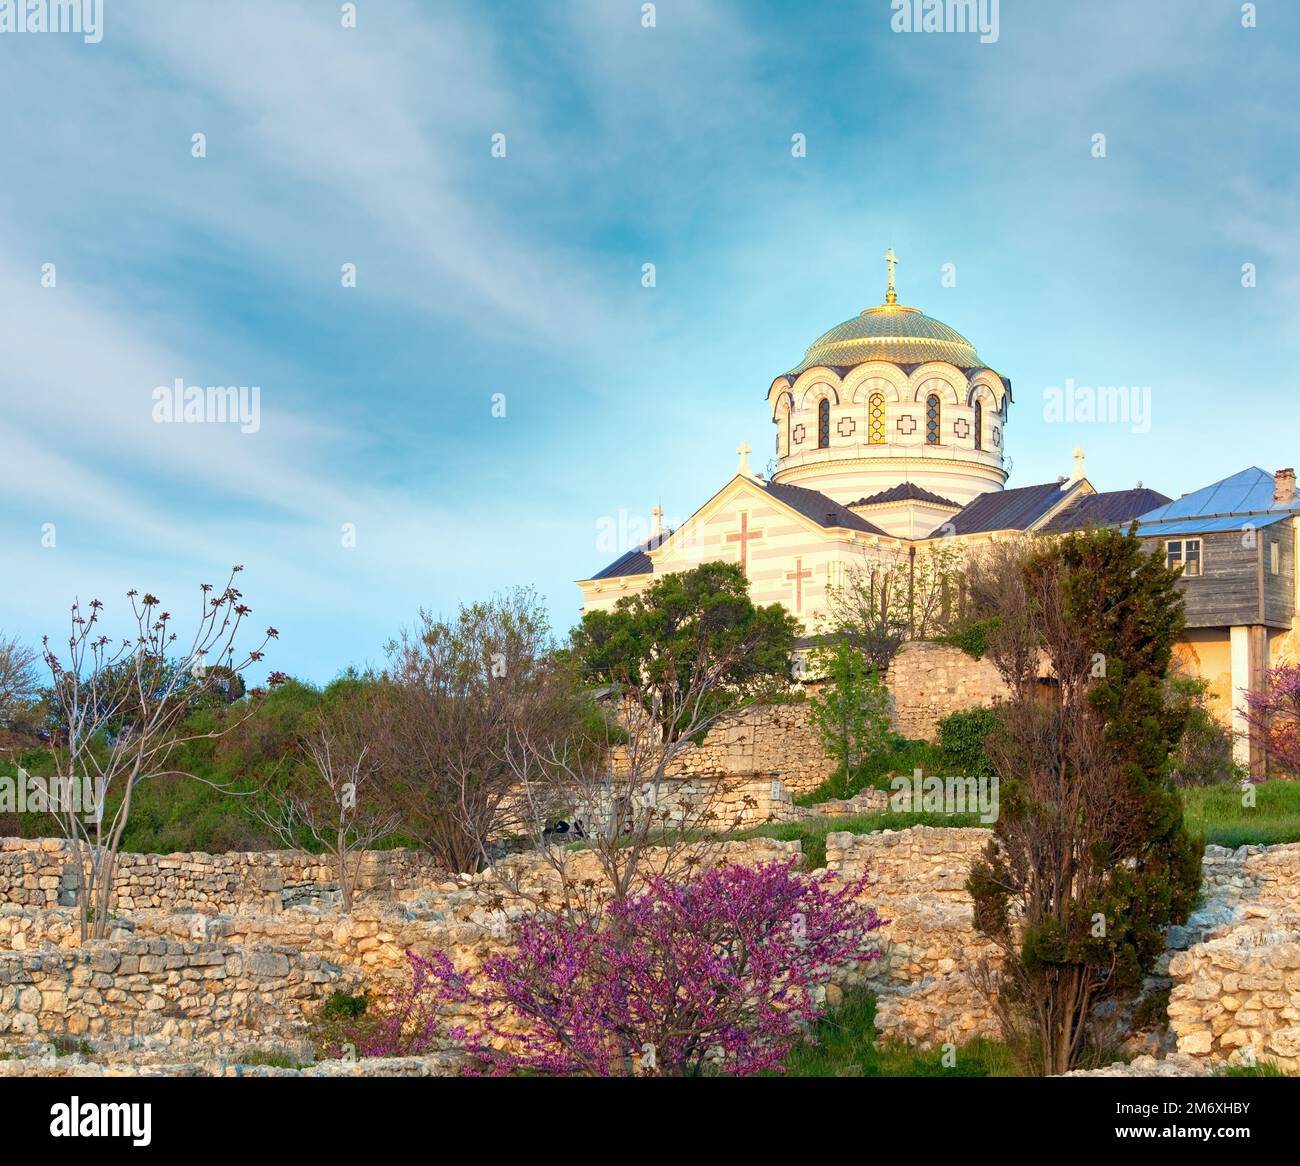 Abendliche St. Volodymyr (St. Vladimir) Kathedrale (Tschersonesos - antike Stadt, Sewastopol, Krim, Ukraine) Stockfoto